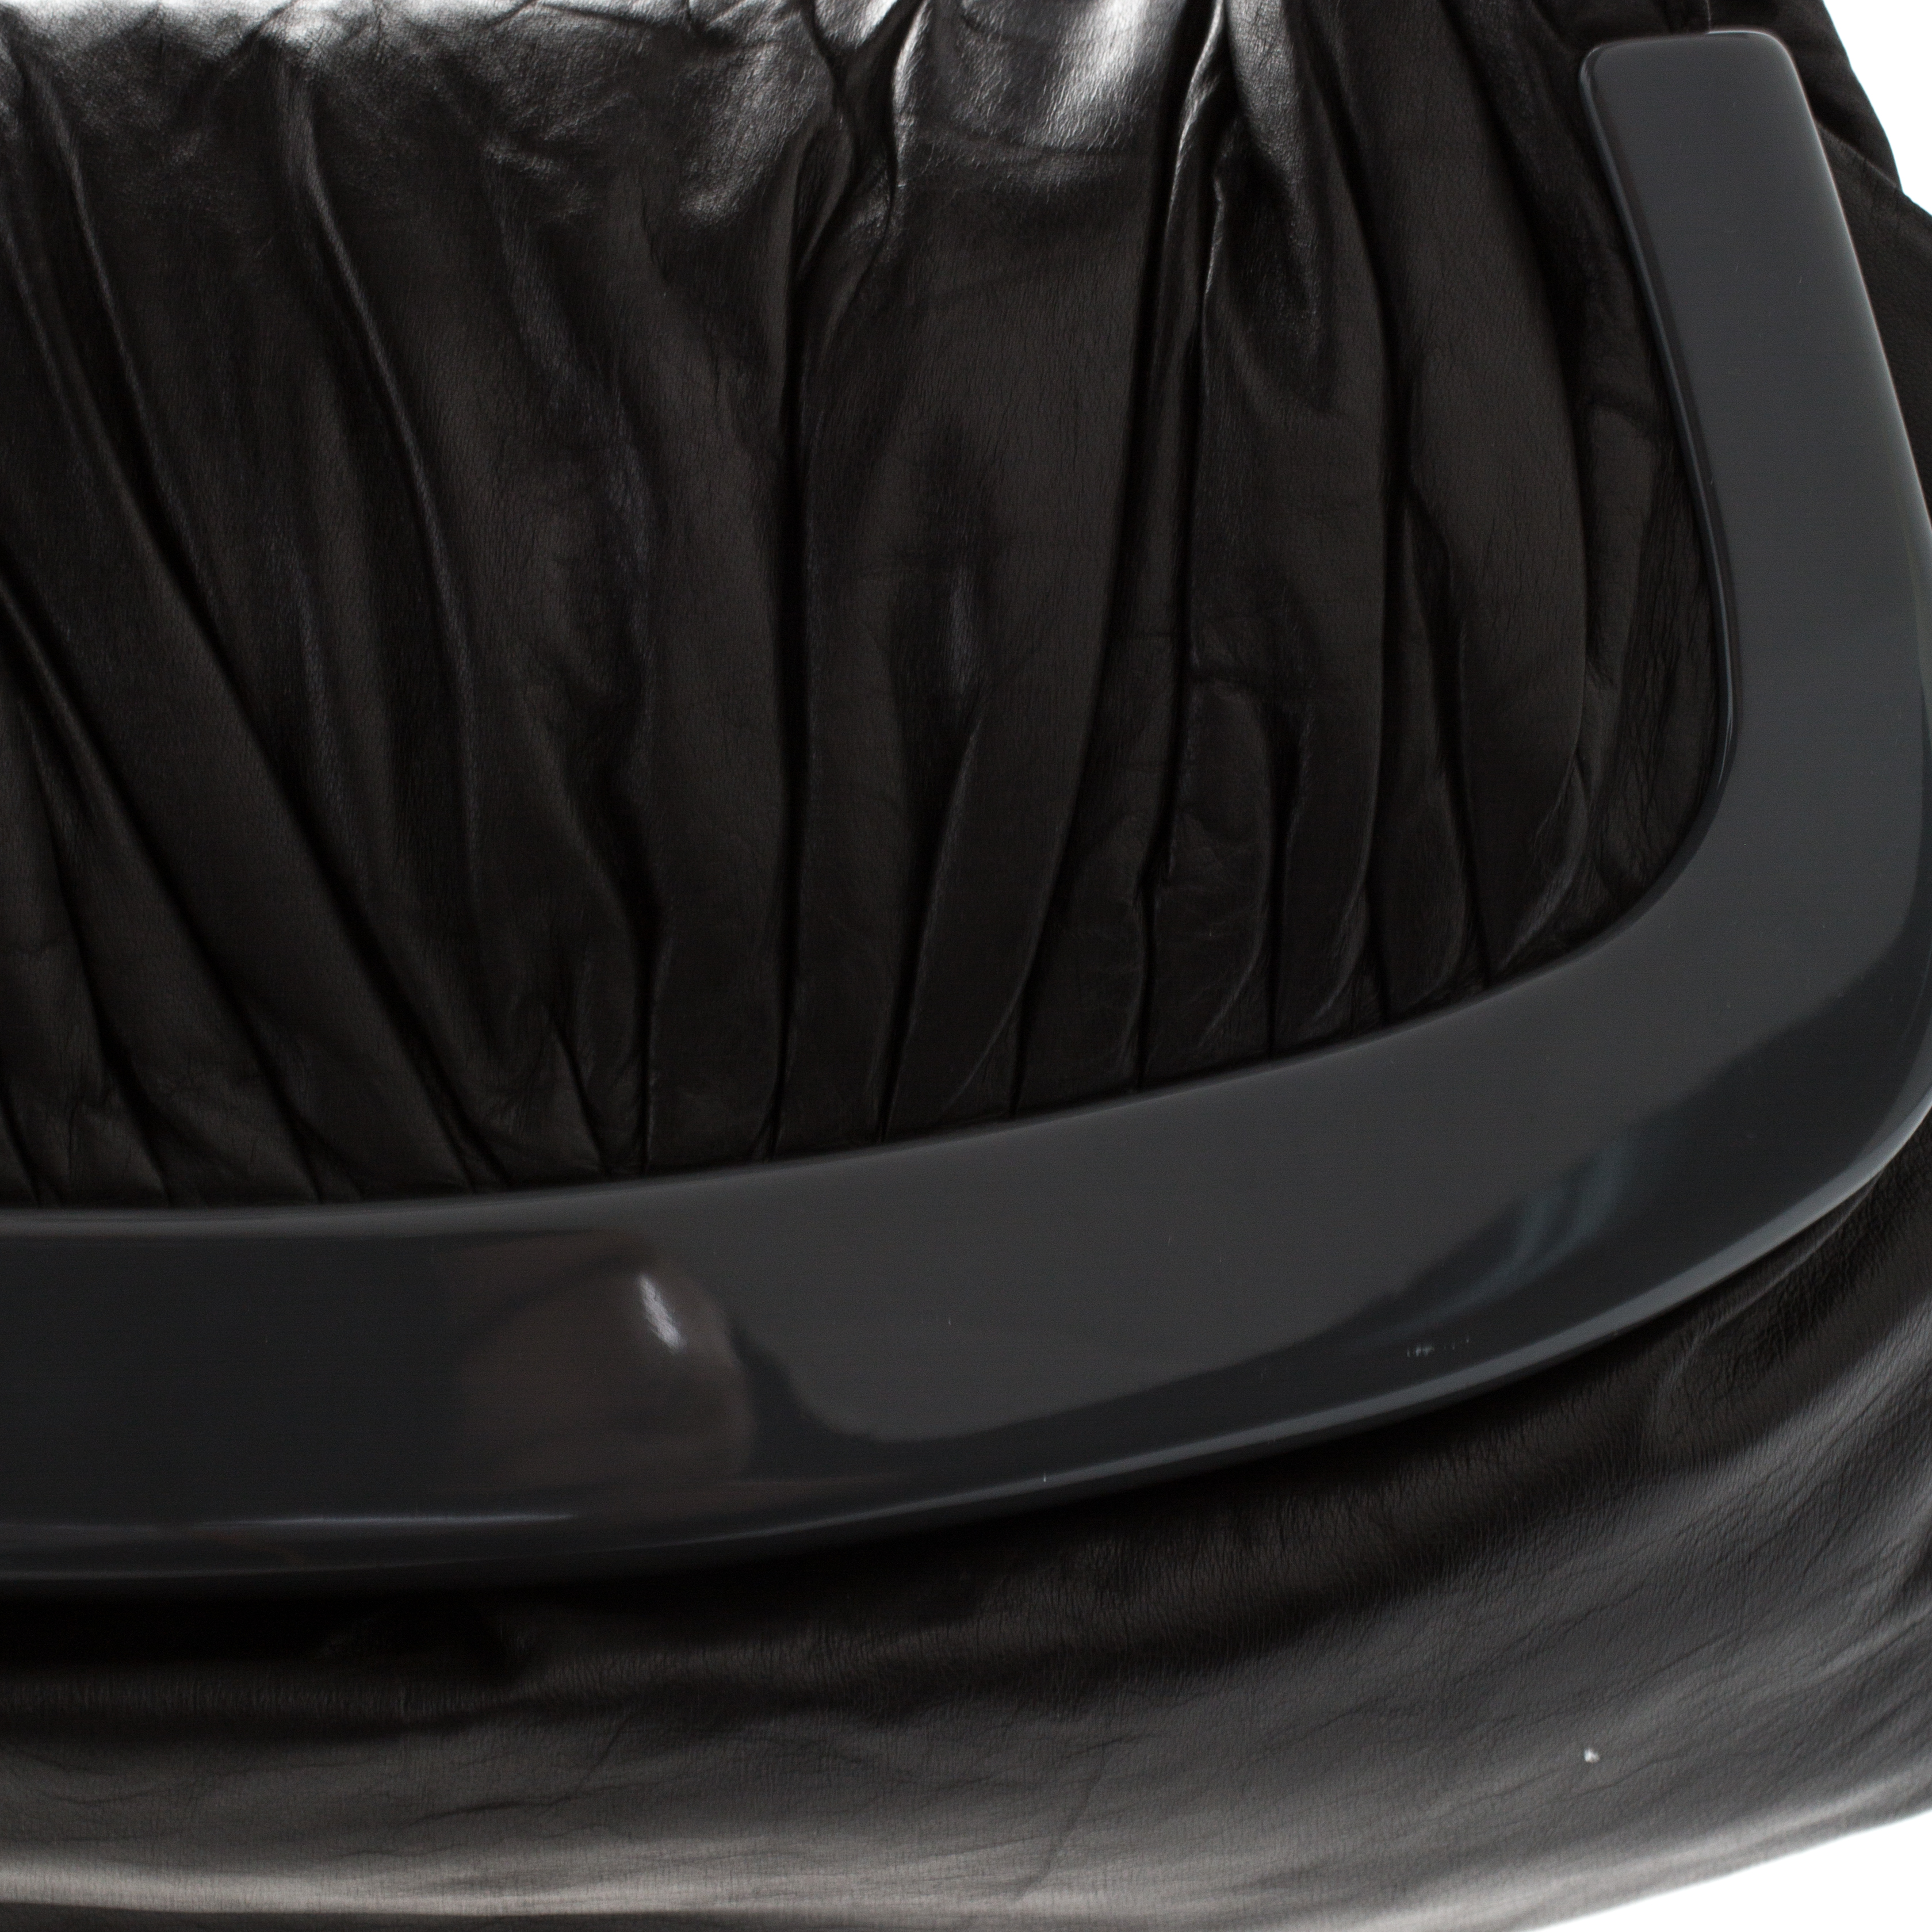 Marni Dark Grey Soft Leather Frame Flap Shoulder Bag